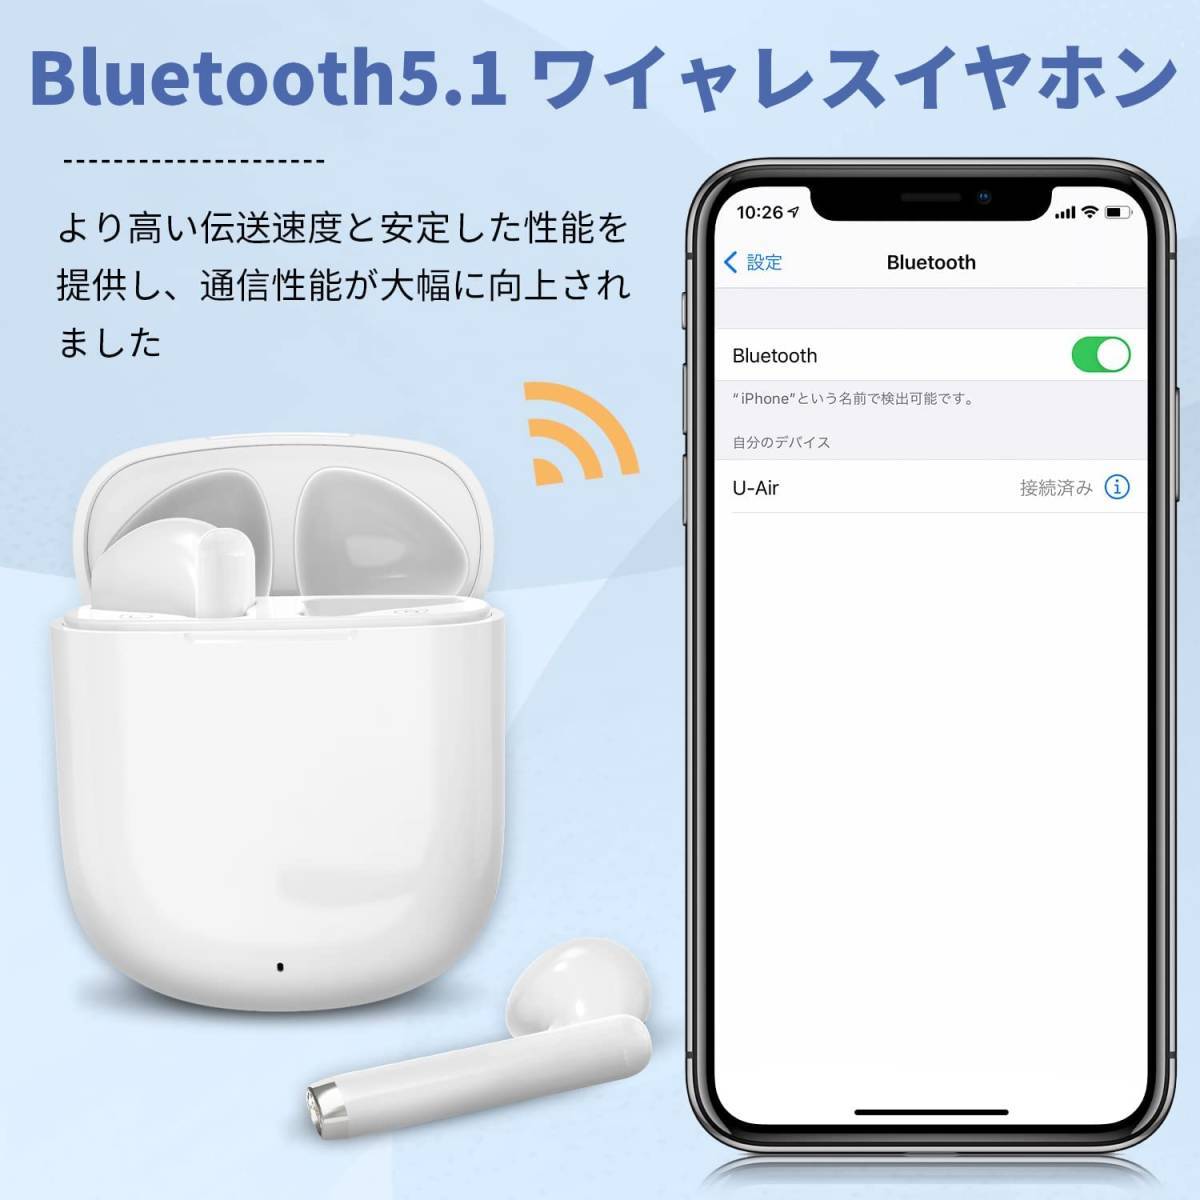 613 【ジャンク】 Bluetoothイヤホン ワイヤレスイヤホン ブルートゥースイヤホン Hi-Fi Bluetooth 5.1 EDR搭載 音量調整可能_画像6